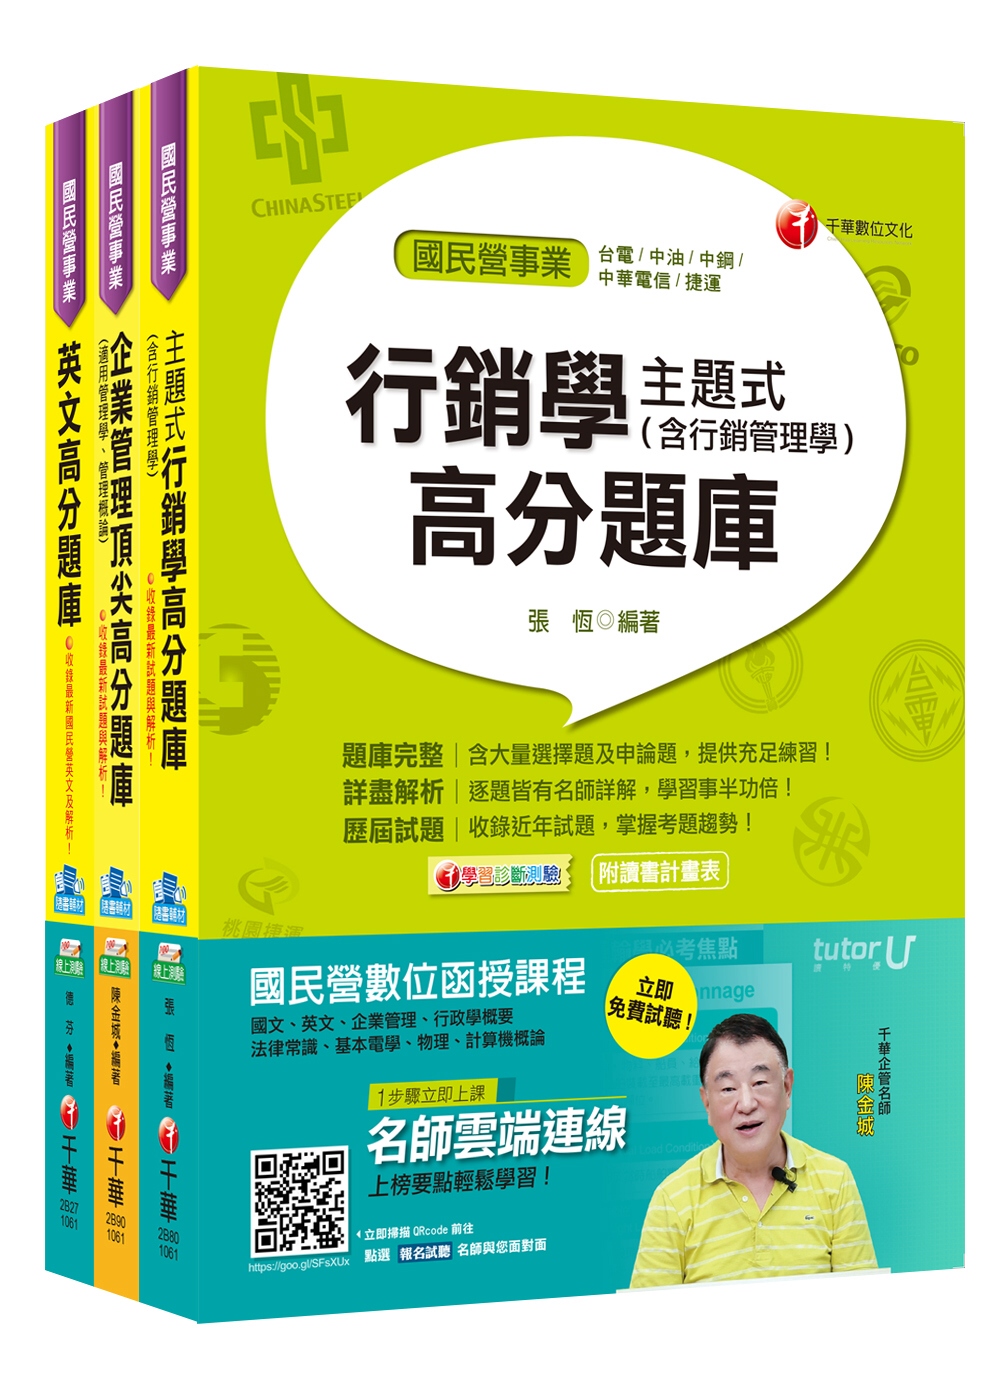 106年中華電信從業人員(基層專員)招考《業務類專業職(四)第一類專員 K8811-12》題庫版套書